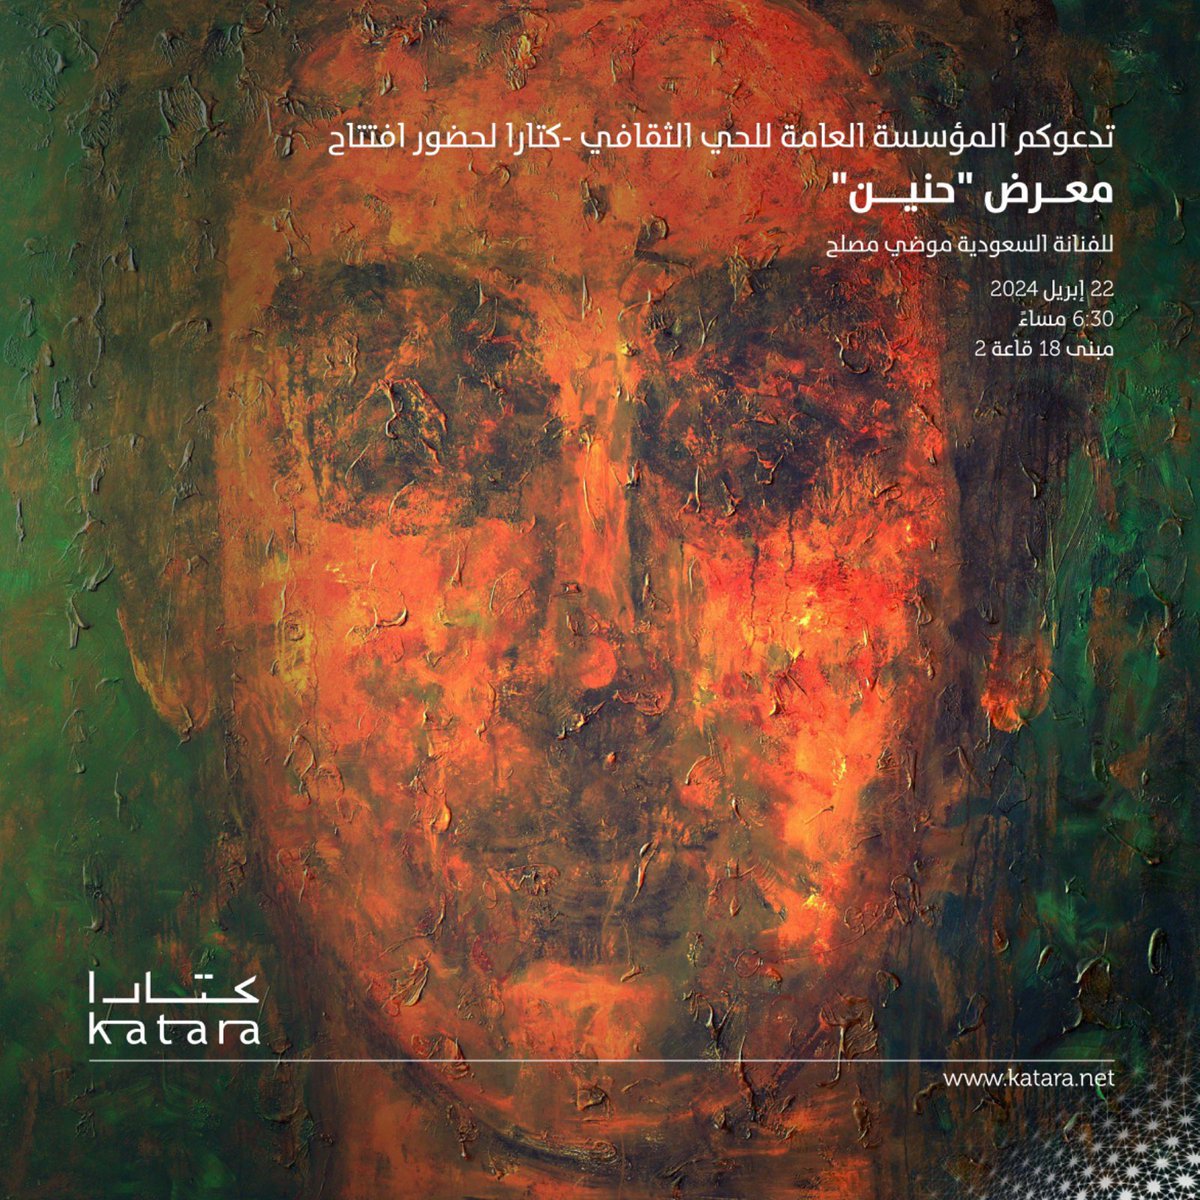 سيفتتح اليوم في #كتارا معرض 'حنين' للفنانة السعودية موضي مصلح الدعوة عامة #قطر #كتارا_ملتقى_الثقافات #كتارا_وجهة_ثقافية_سياحية